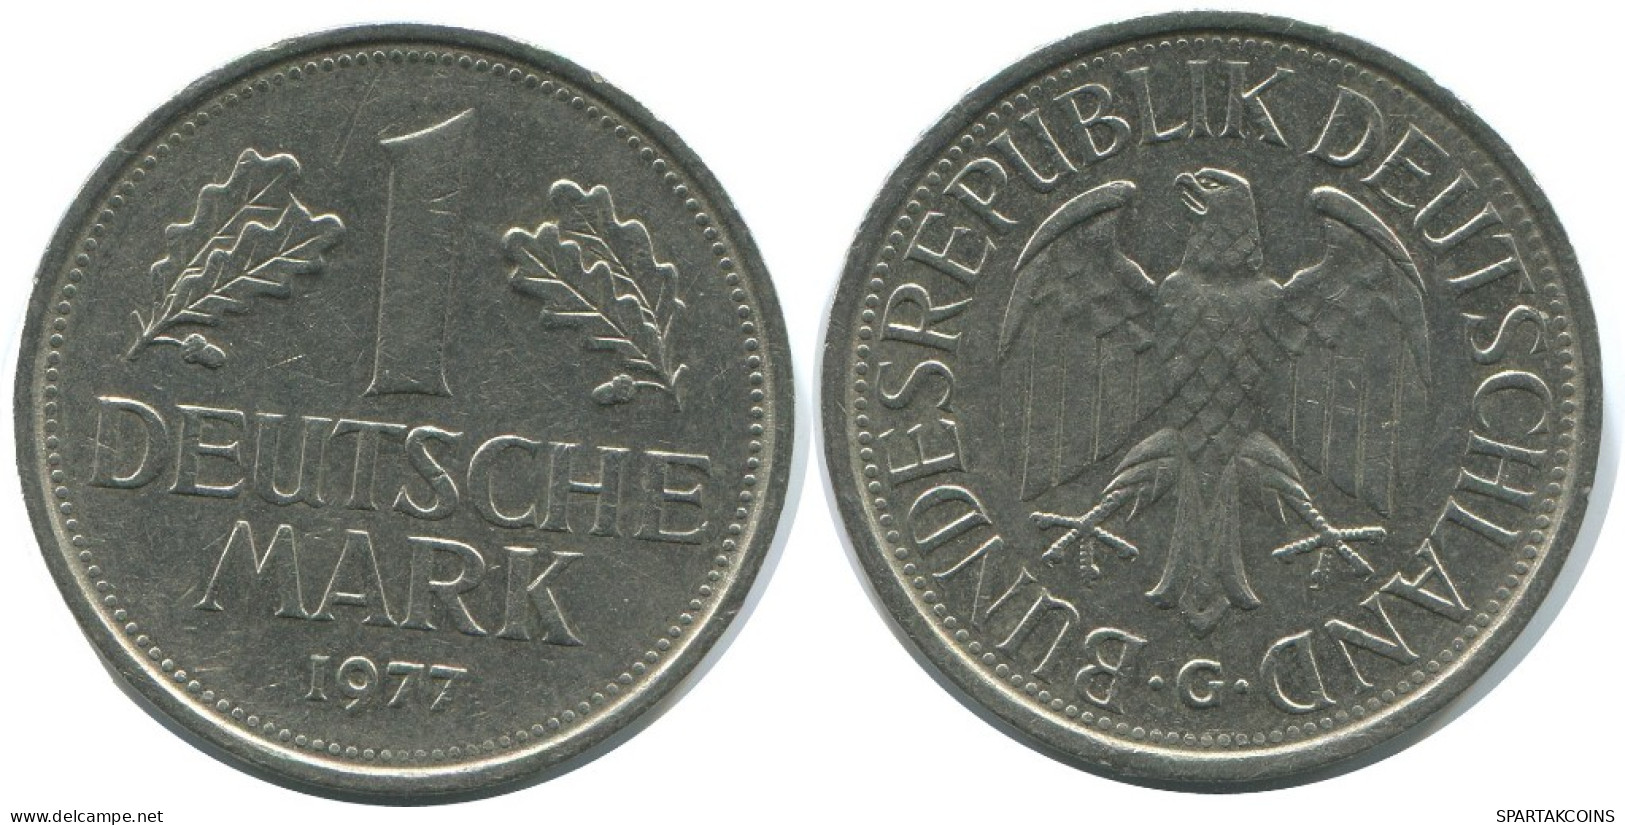 1 DM 1977 G BRD ALEMANIA Moneda GERMANY #AG290.3.E.A - 1 Marco